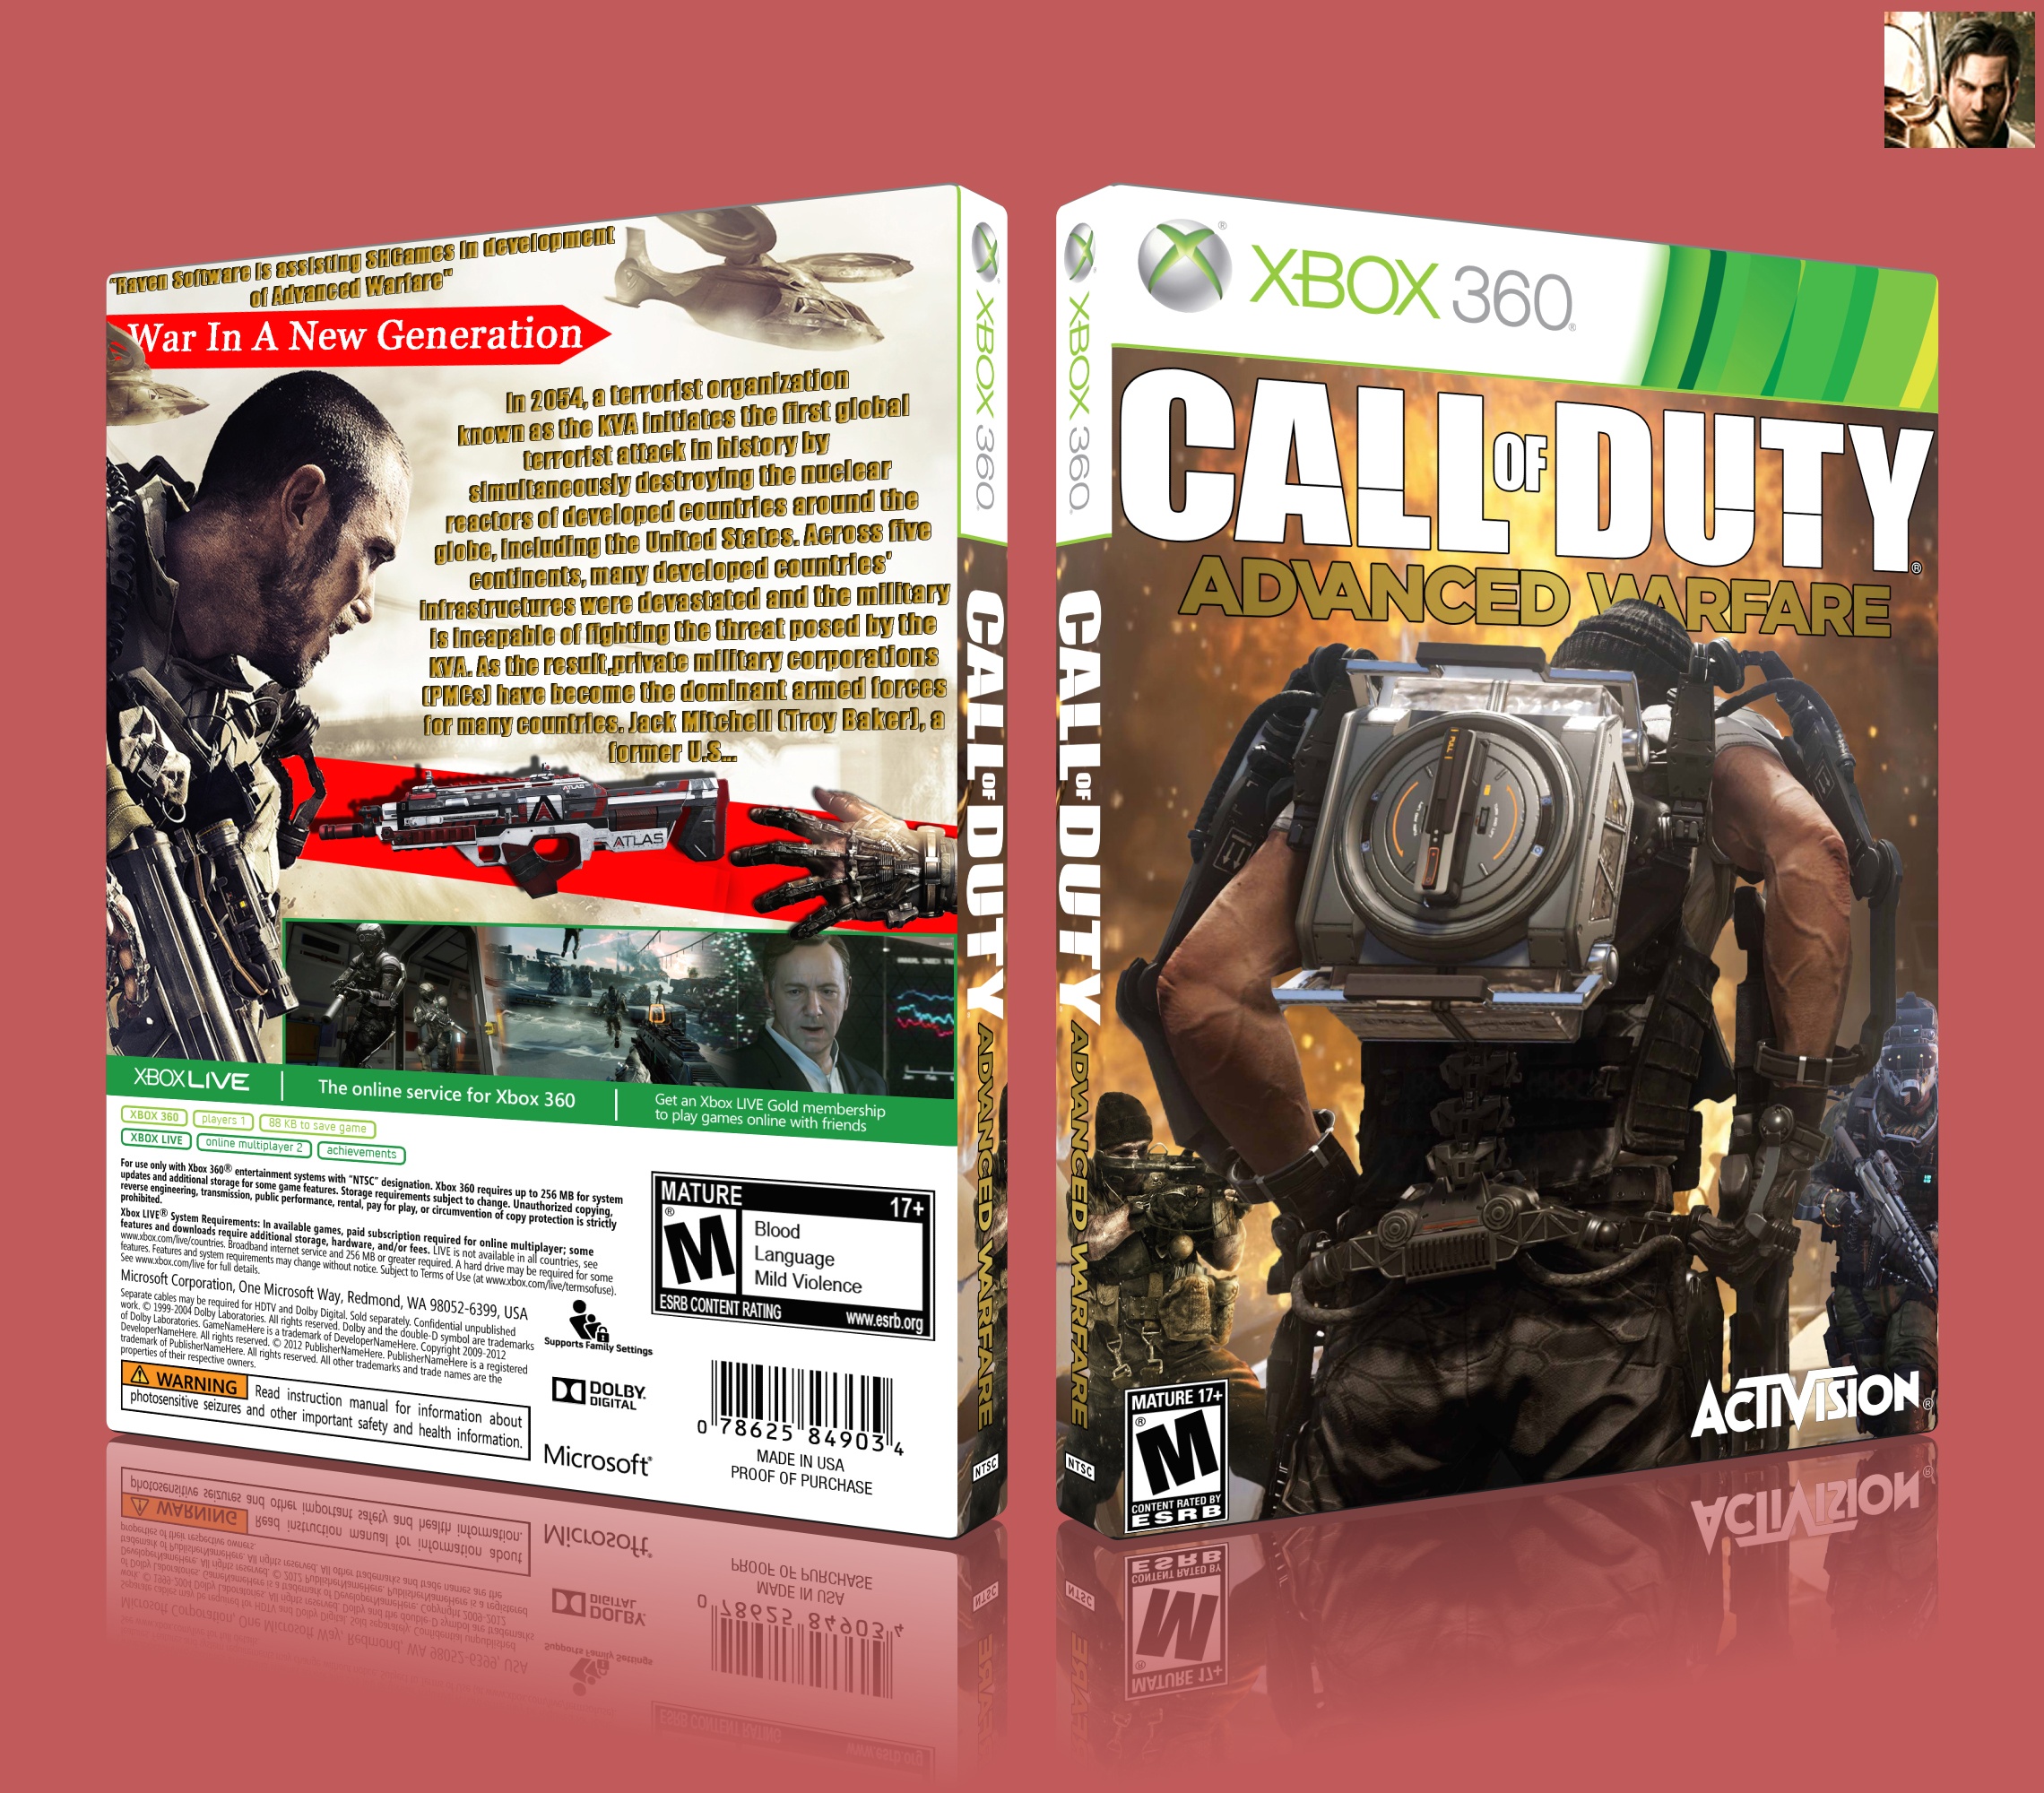 Call of Duty Advanced Warfare box cover